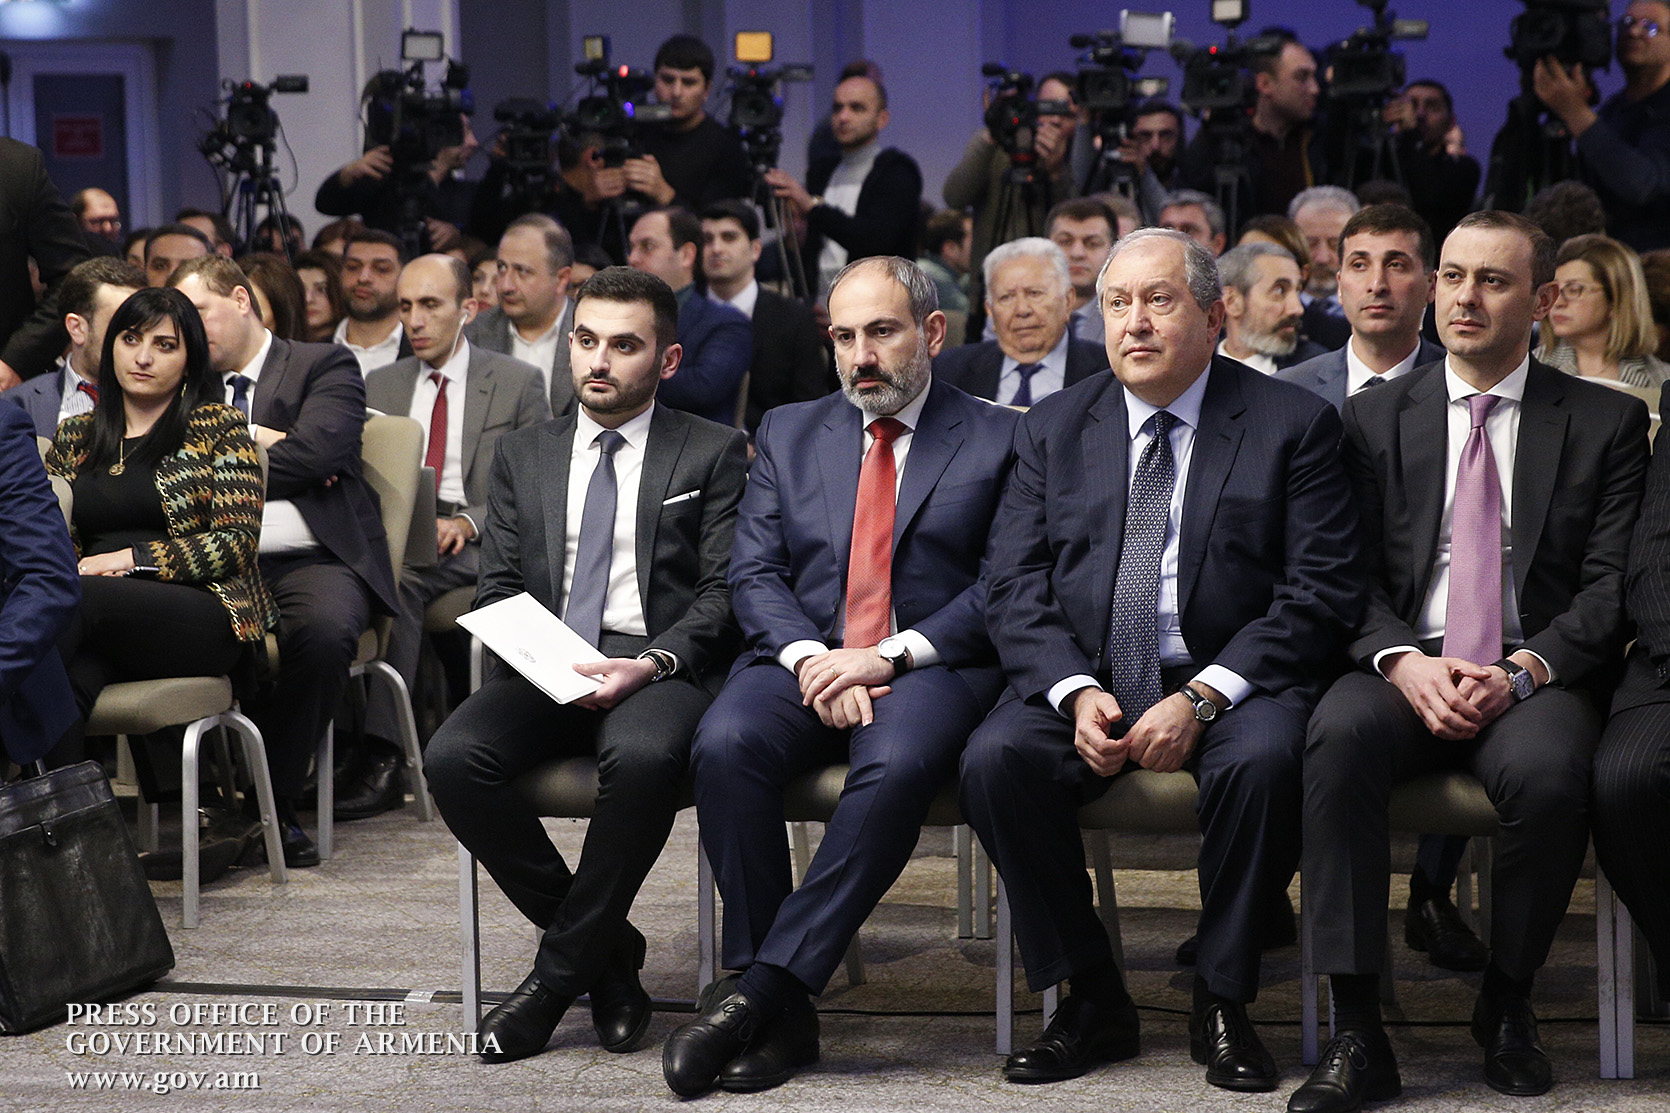 В Ереване презентован новый аналитический центр "Орбели". В мероприятии участвовали премьер, президент, эксперты и историки 